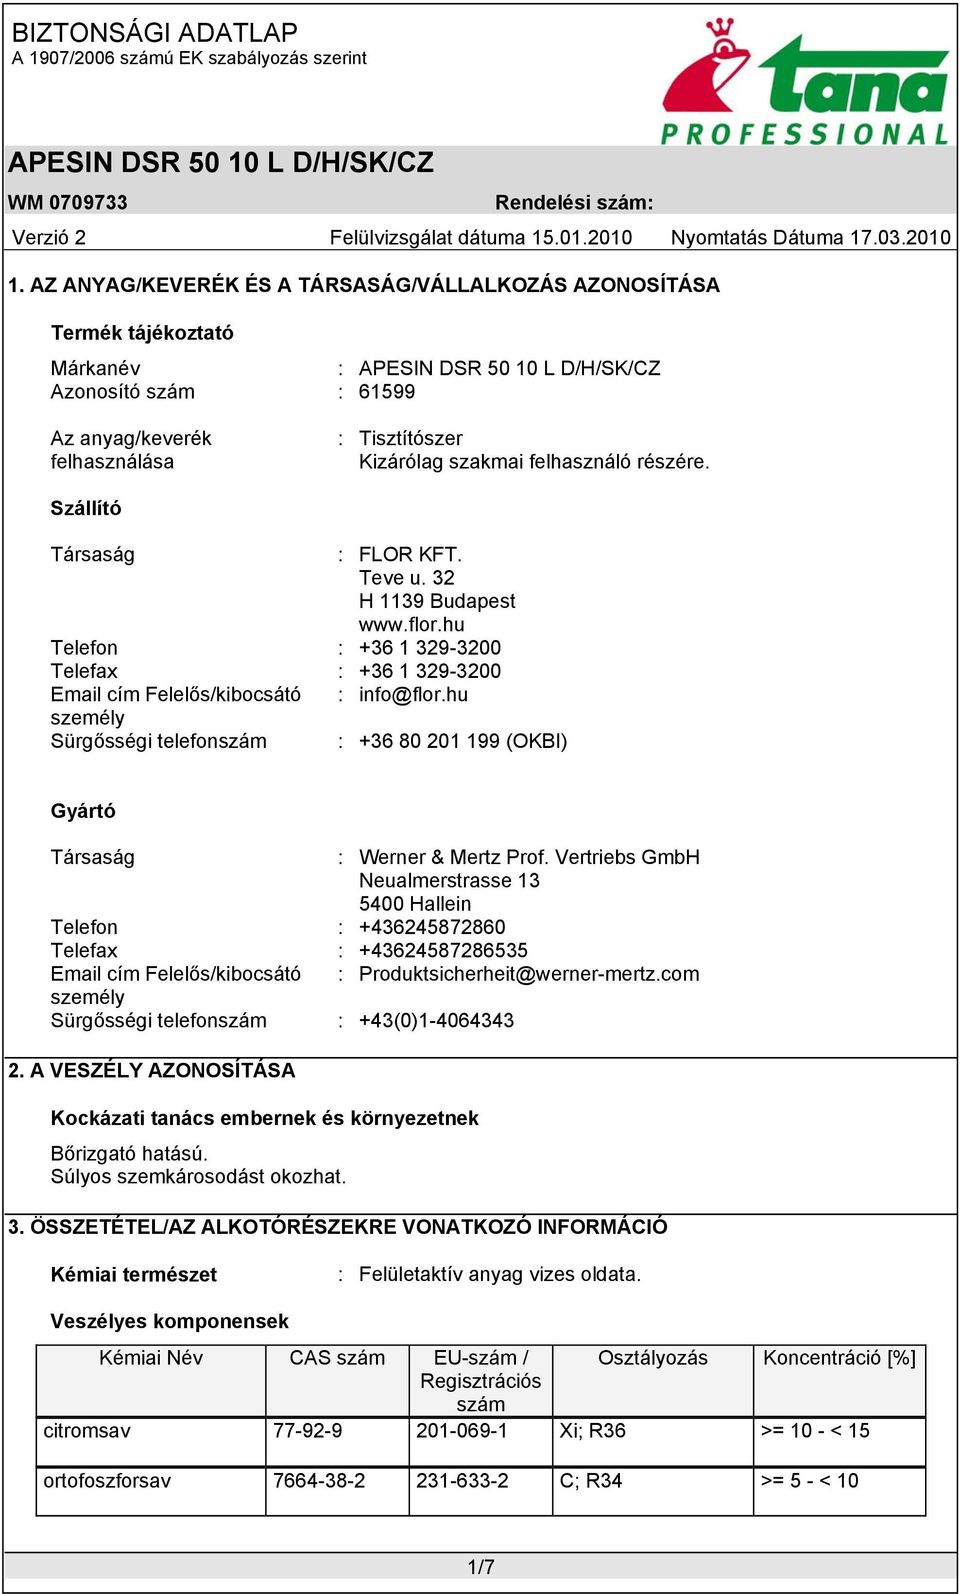 hu személy Sürgősségi telefonszám : +36 80 201 199 (OKBI) Gyártó Társaság : Werner & Mertz Prof.